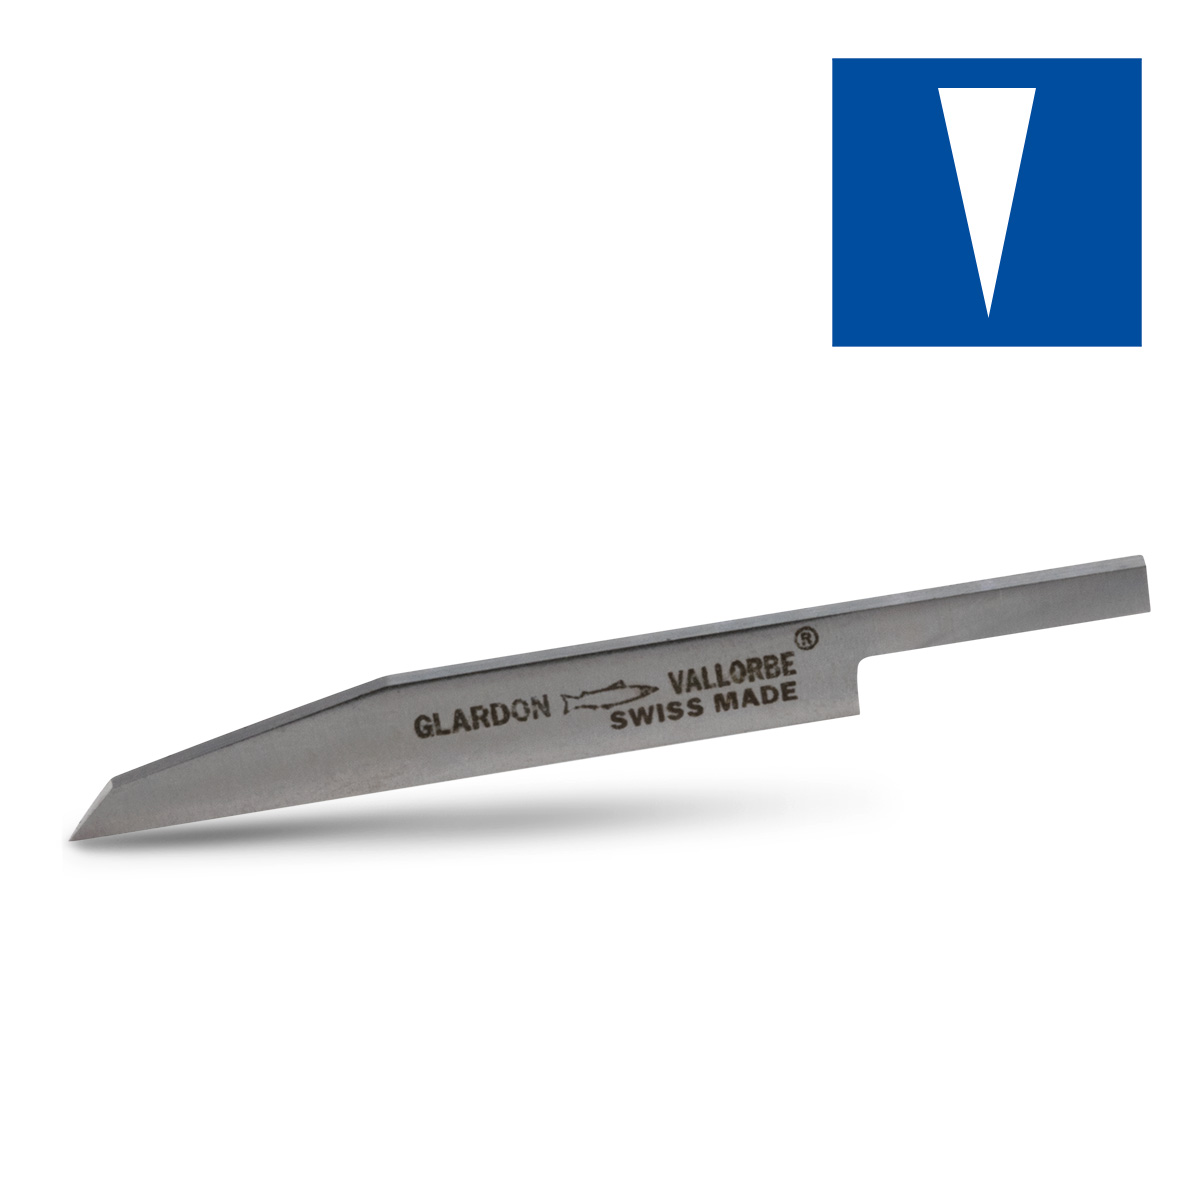 HSS Gravierstichel, Messer 1,8 mm, Länge 55 mm, für Spannfutter Ø 3,2 mm